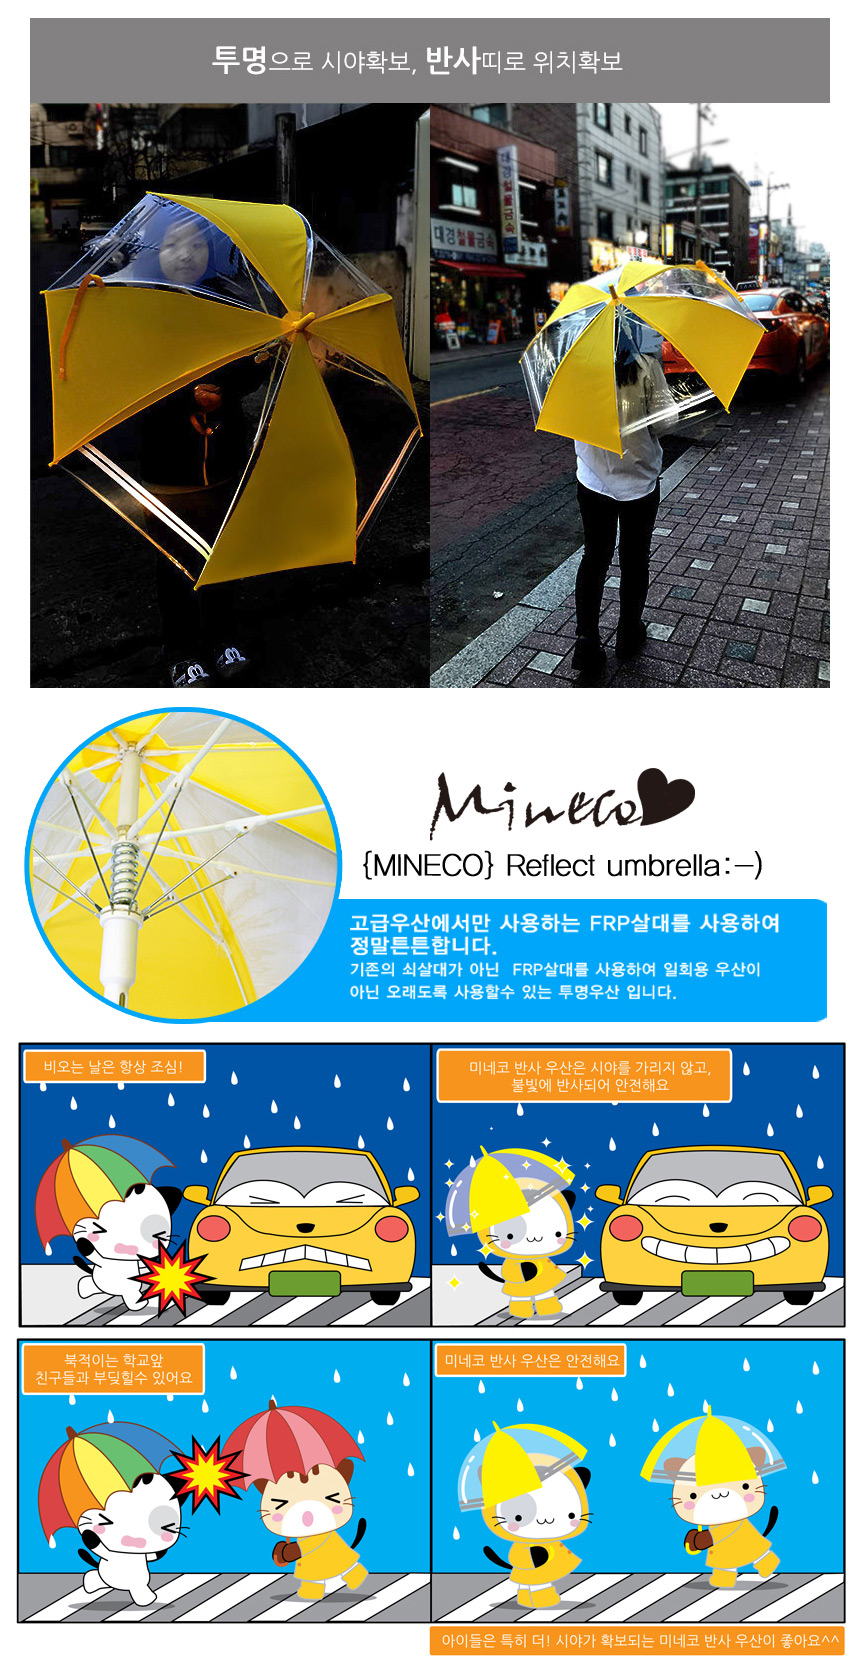 미네코 안전 반사우산 10,900원 - 라임디자인 패션잡화, 양/우산, 접이식우산, 무지 바보사랑 미네코 안전 반사우산 10,900원 - 라임디자인 패션잡화, 양/우산, 접이식우산, 무지 바보사랑